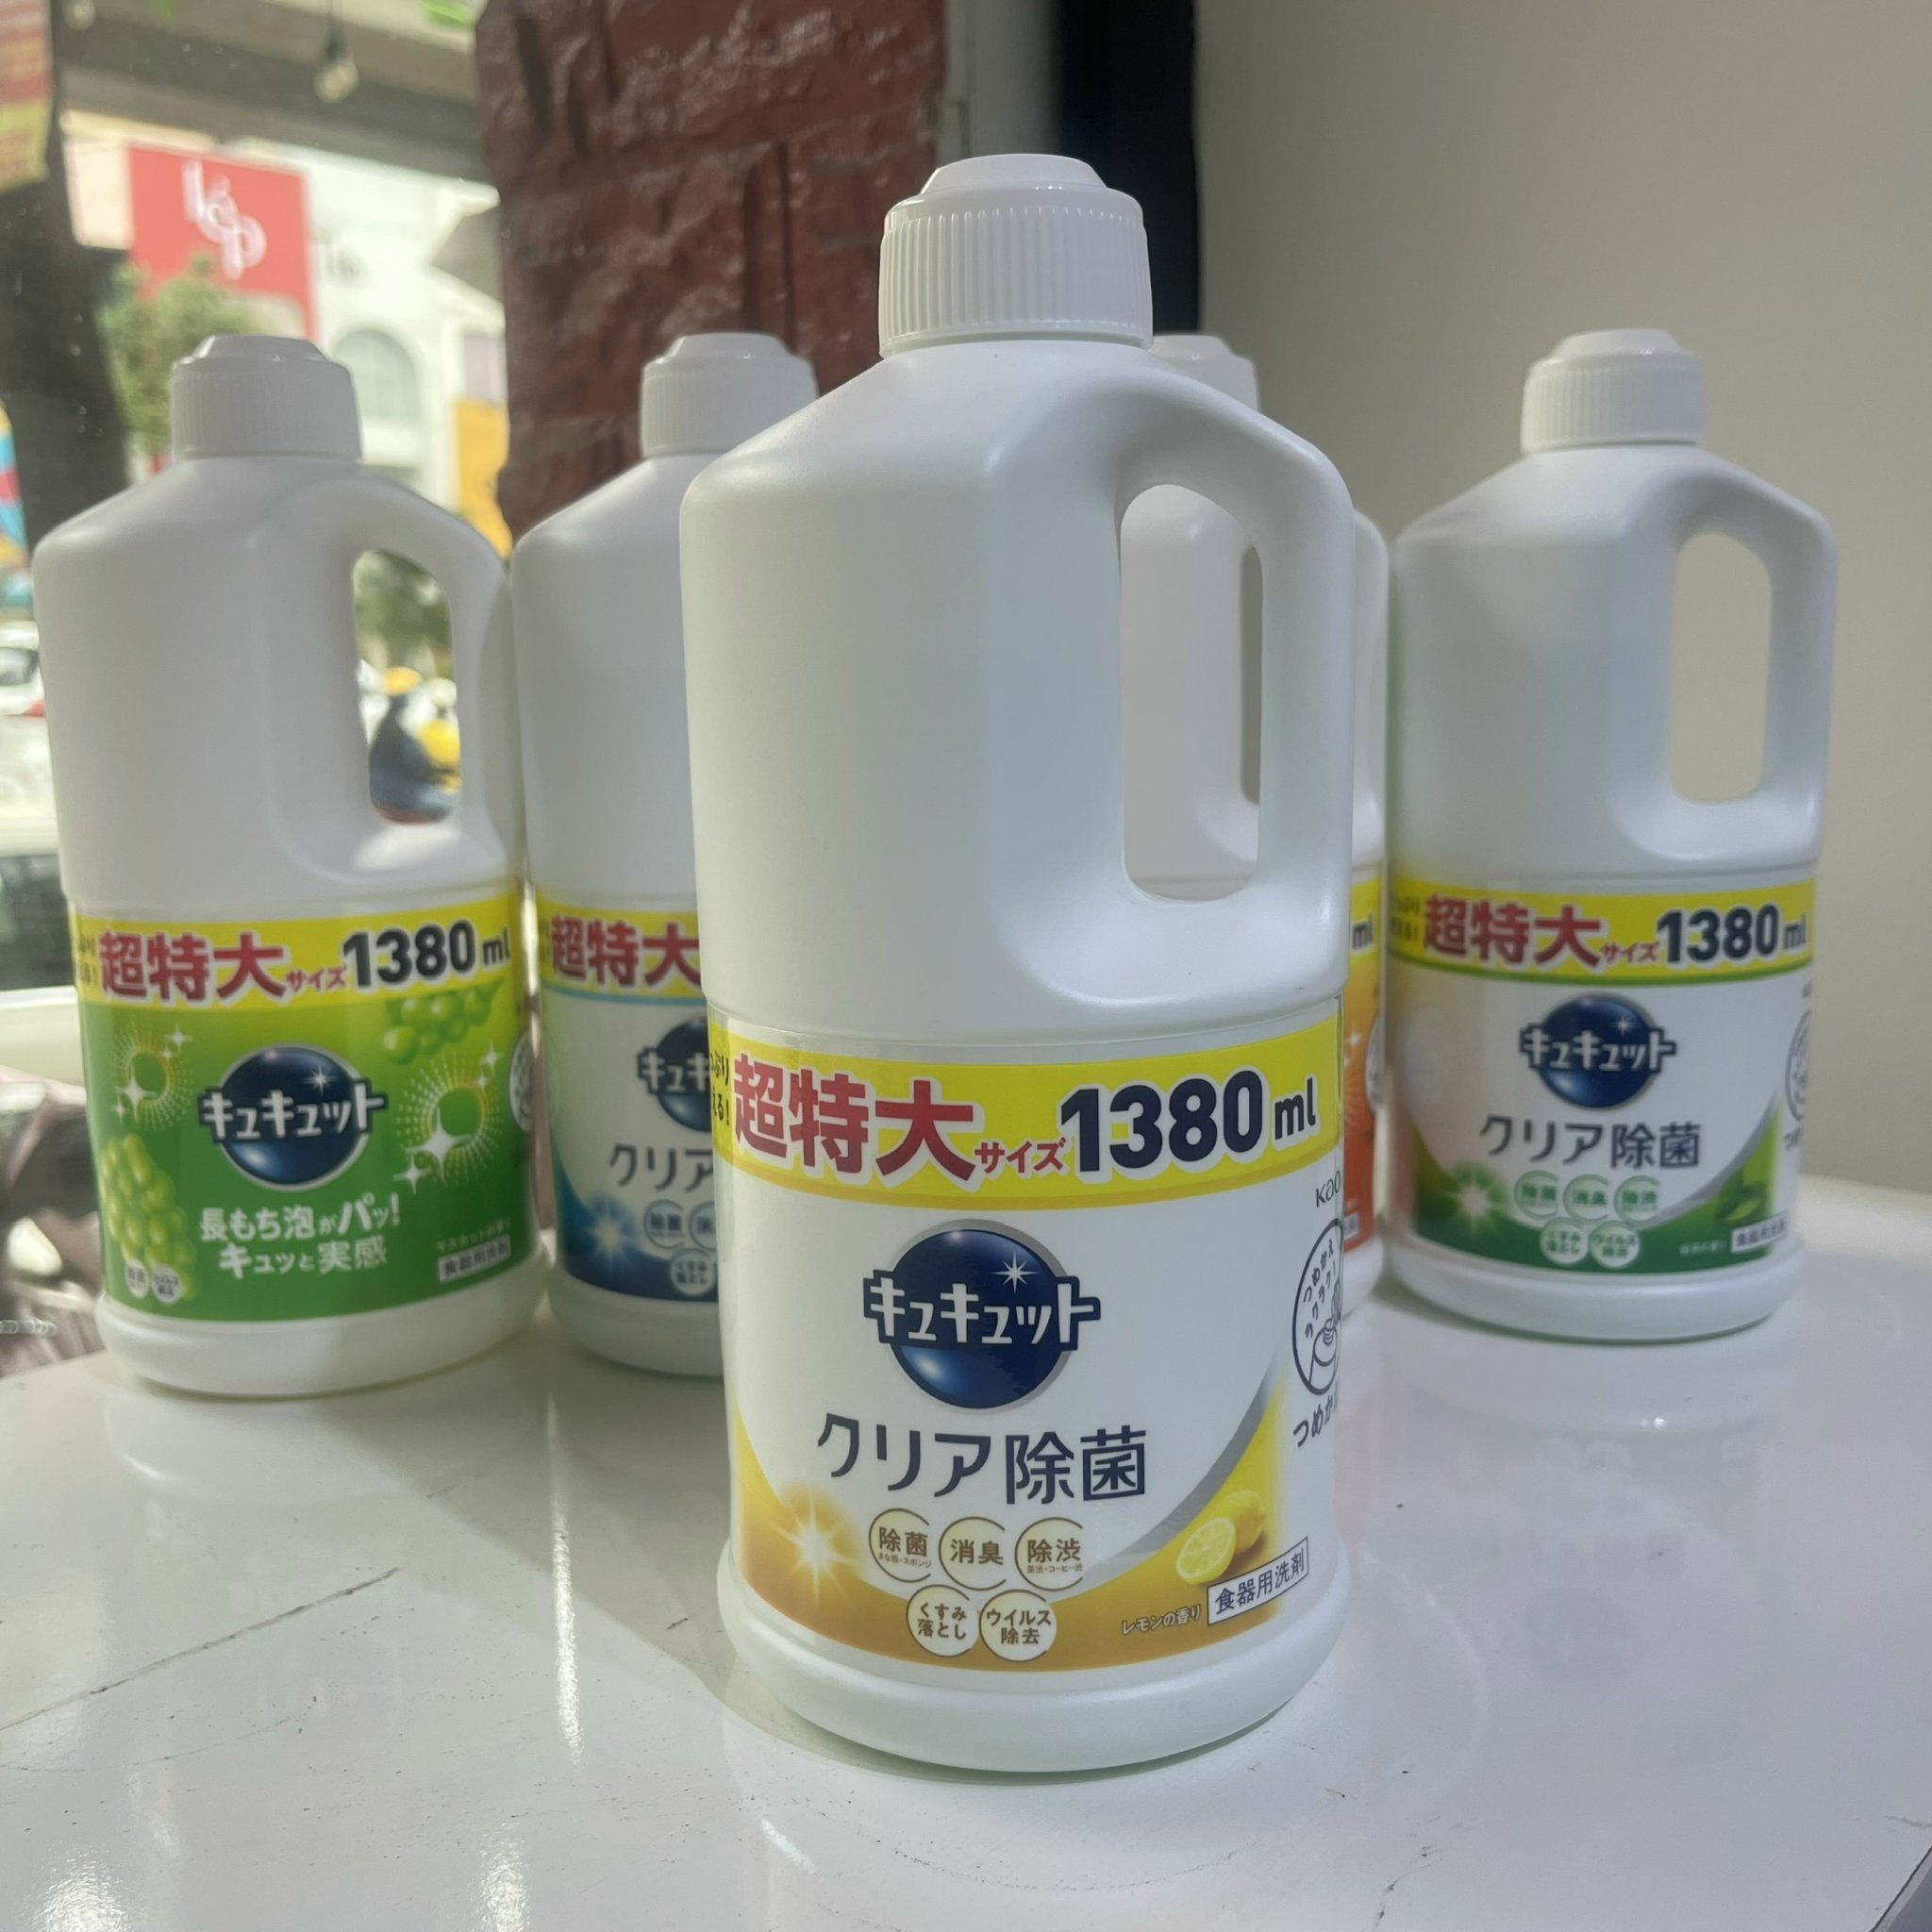 Nước rửa bát Kao đậm đặc Nhật Bản1380ml - không hại da tay, cho bát đĩa sạch bong